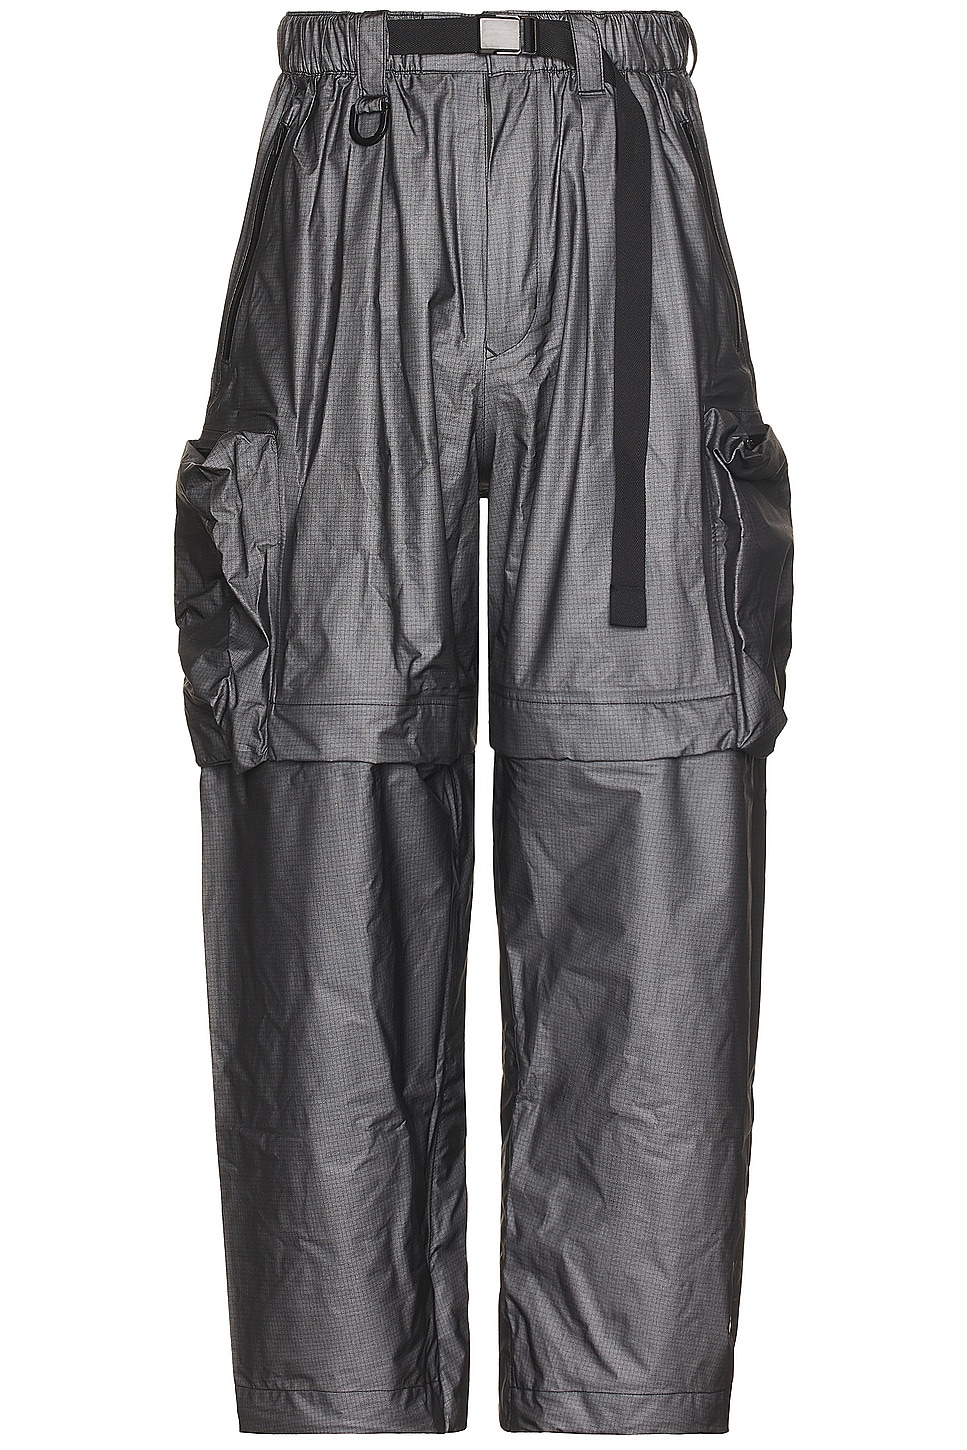 Image 1 of Y-3 Yohji Yamamoto Gtx Pants in Black